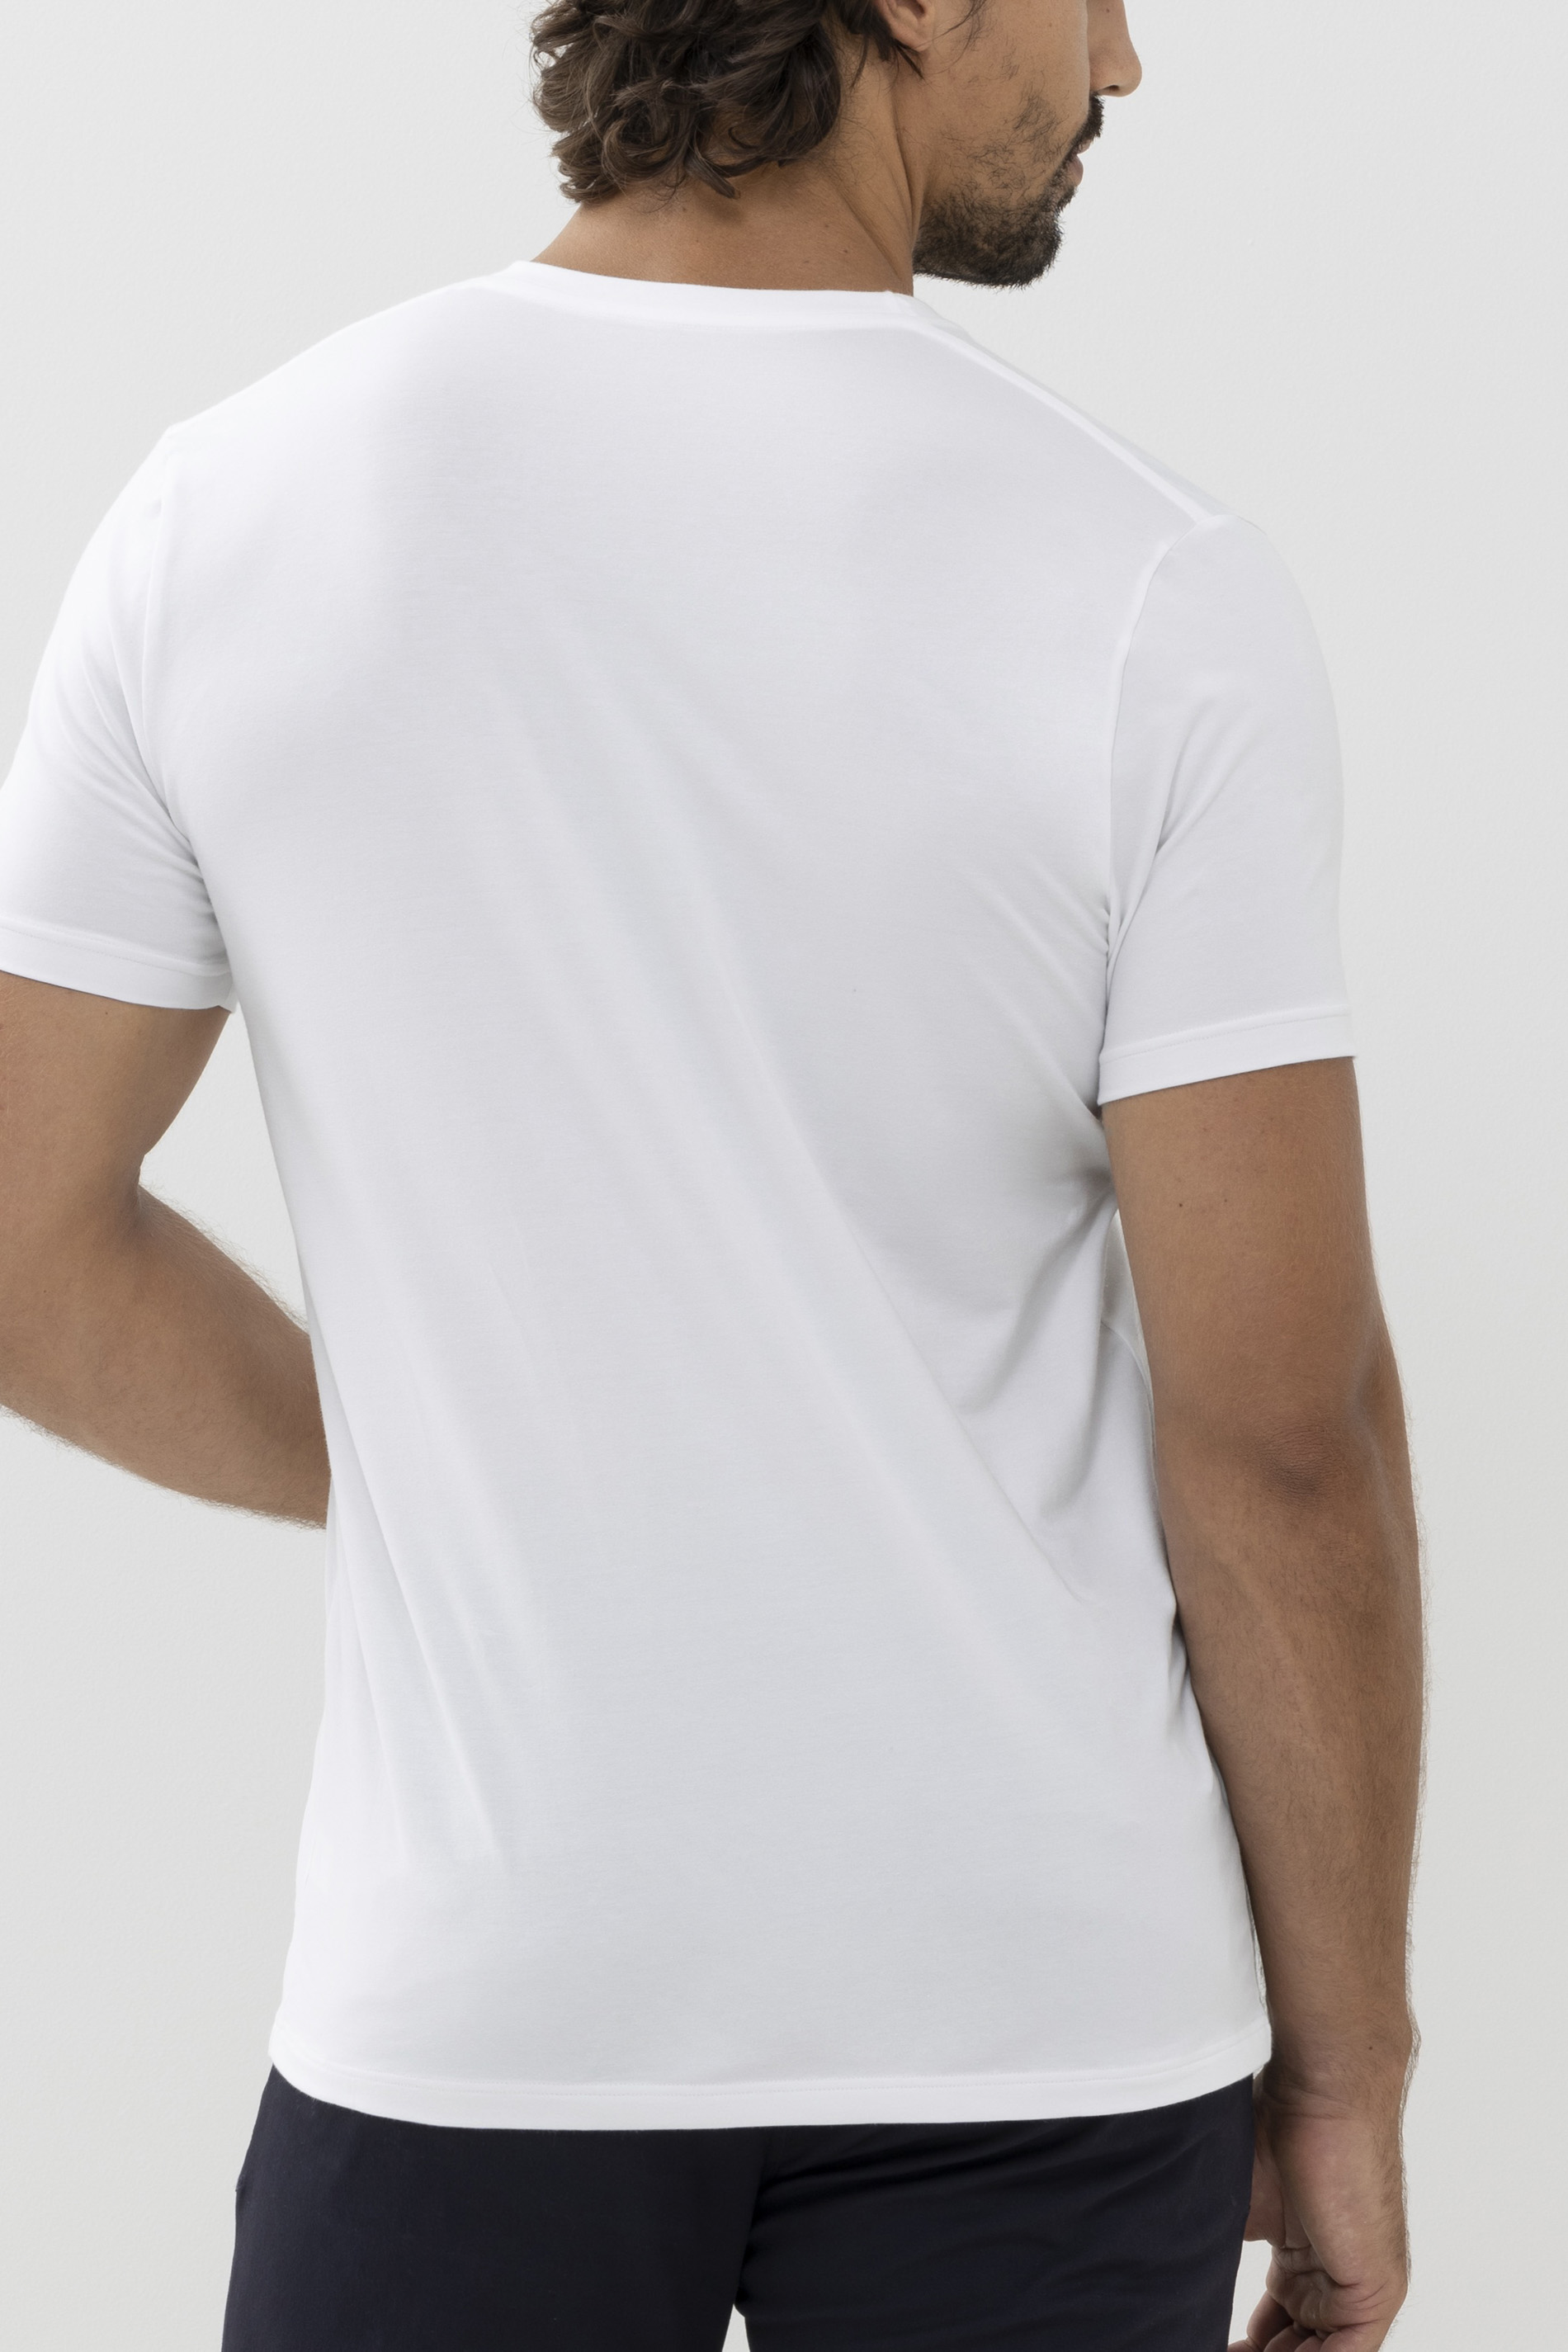 T-shirt Dry Cotton Colour Rear View | mey®